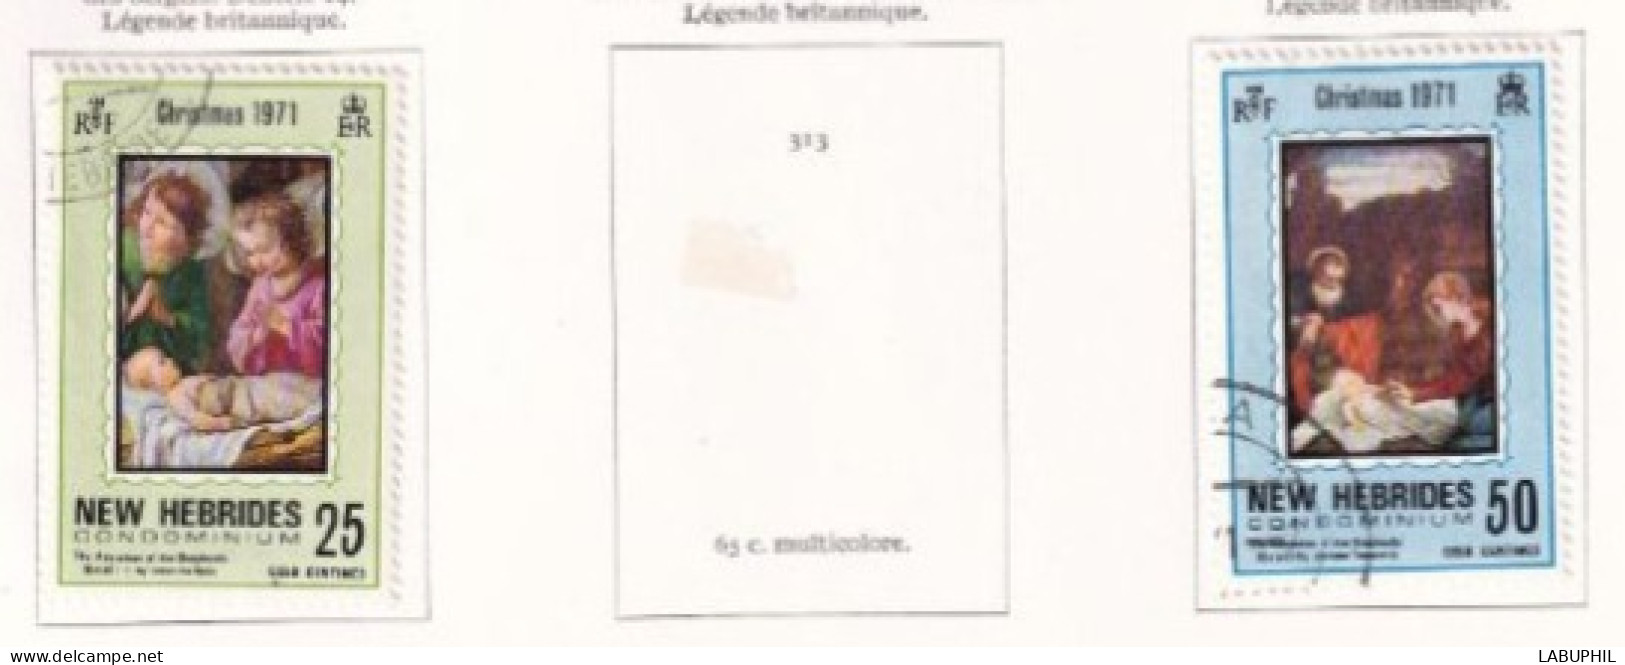 NOUVELLES HEBRIDES Dispersion D'une Collection Oblitéré Et Mlh   1971 - Oblitérés